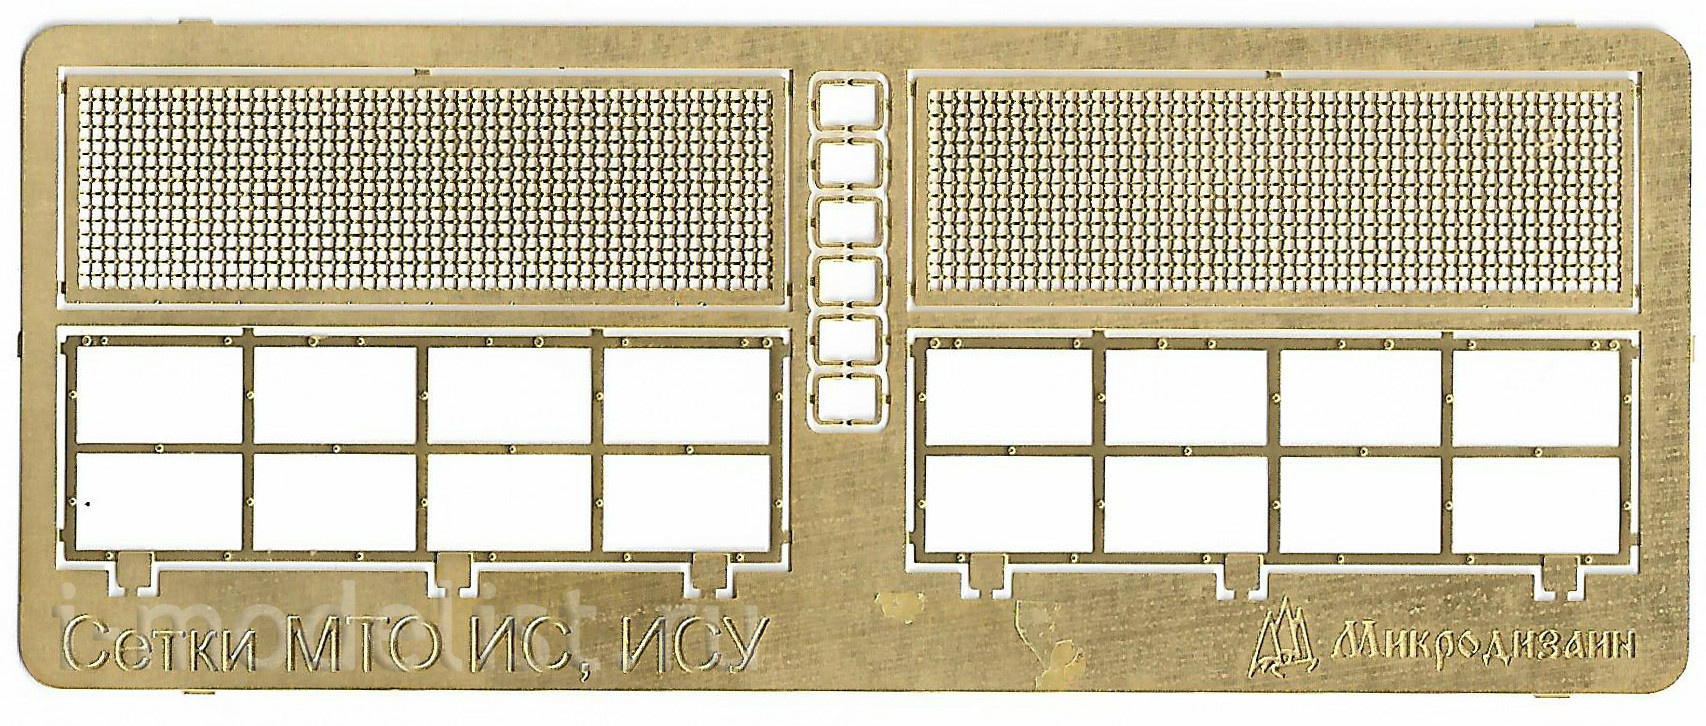 035301 Microdesign 1/35 is-2 Zvezda, Tamiya